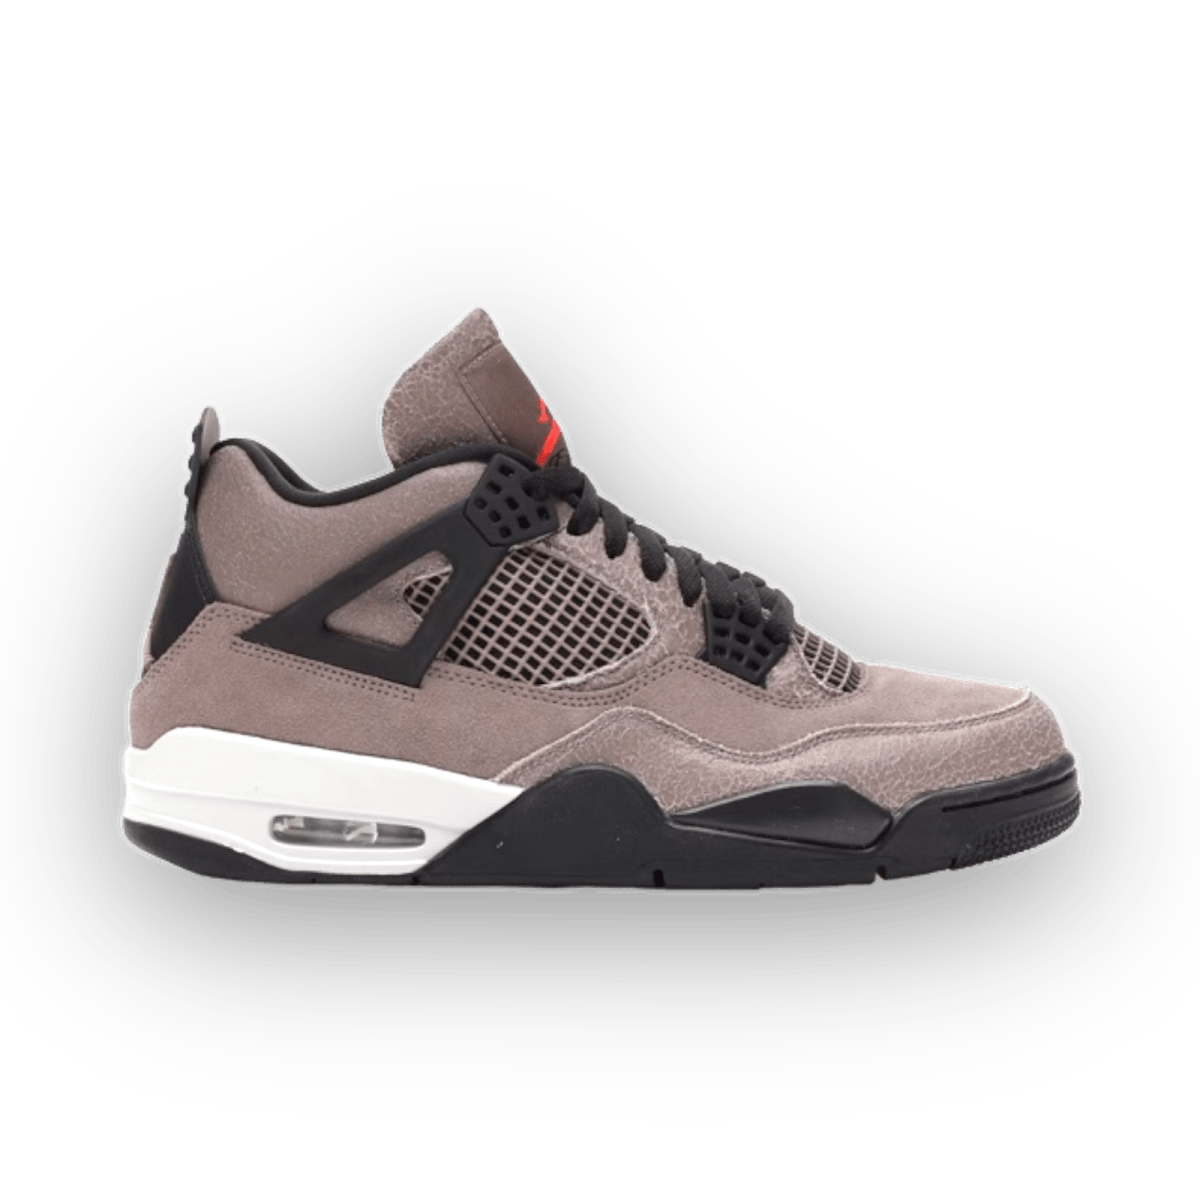 Jordan 4 Retro Taupe Haze - Mid Sneaker - Jawns on Fire Sneakers & Streetwear